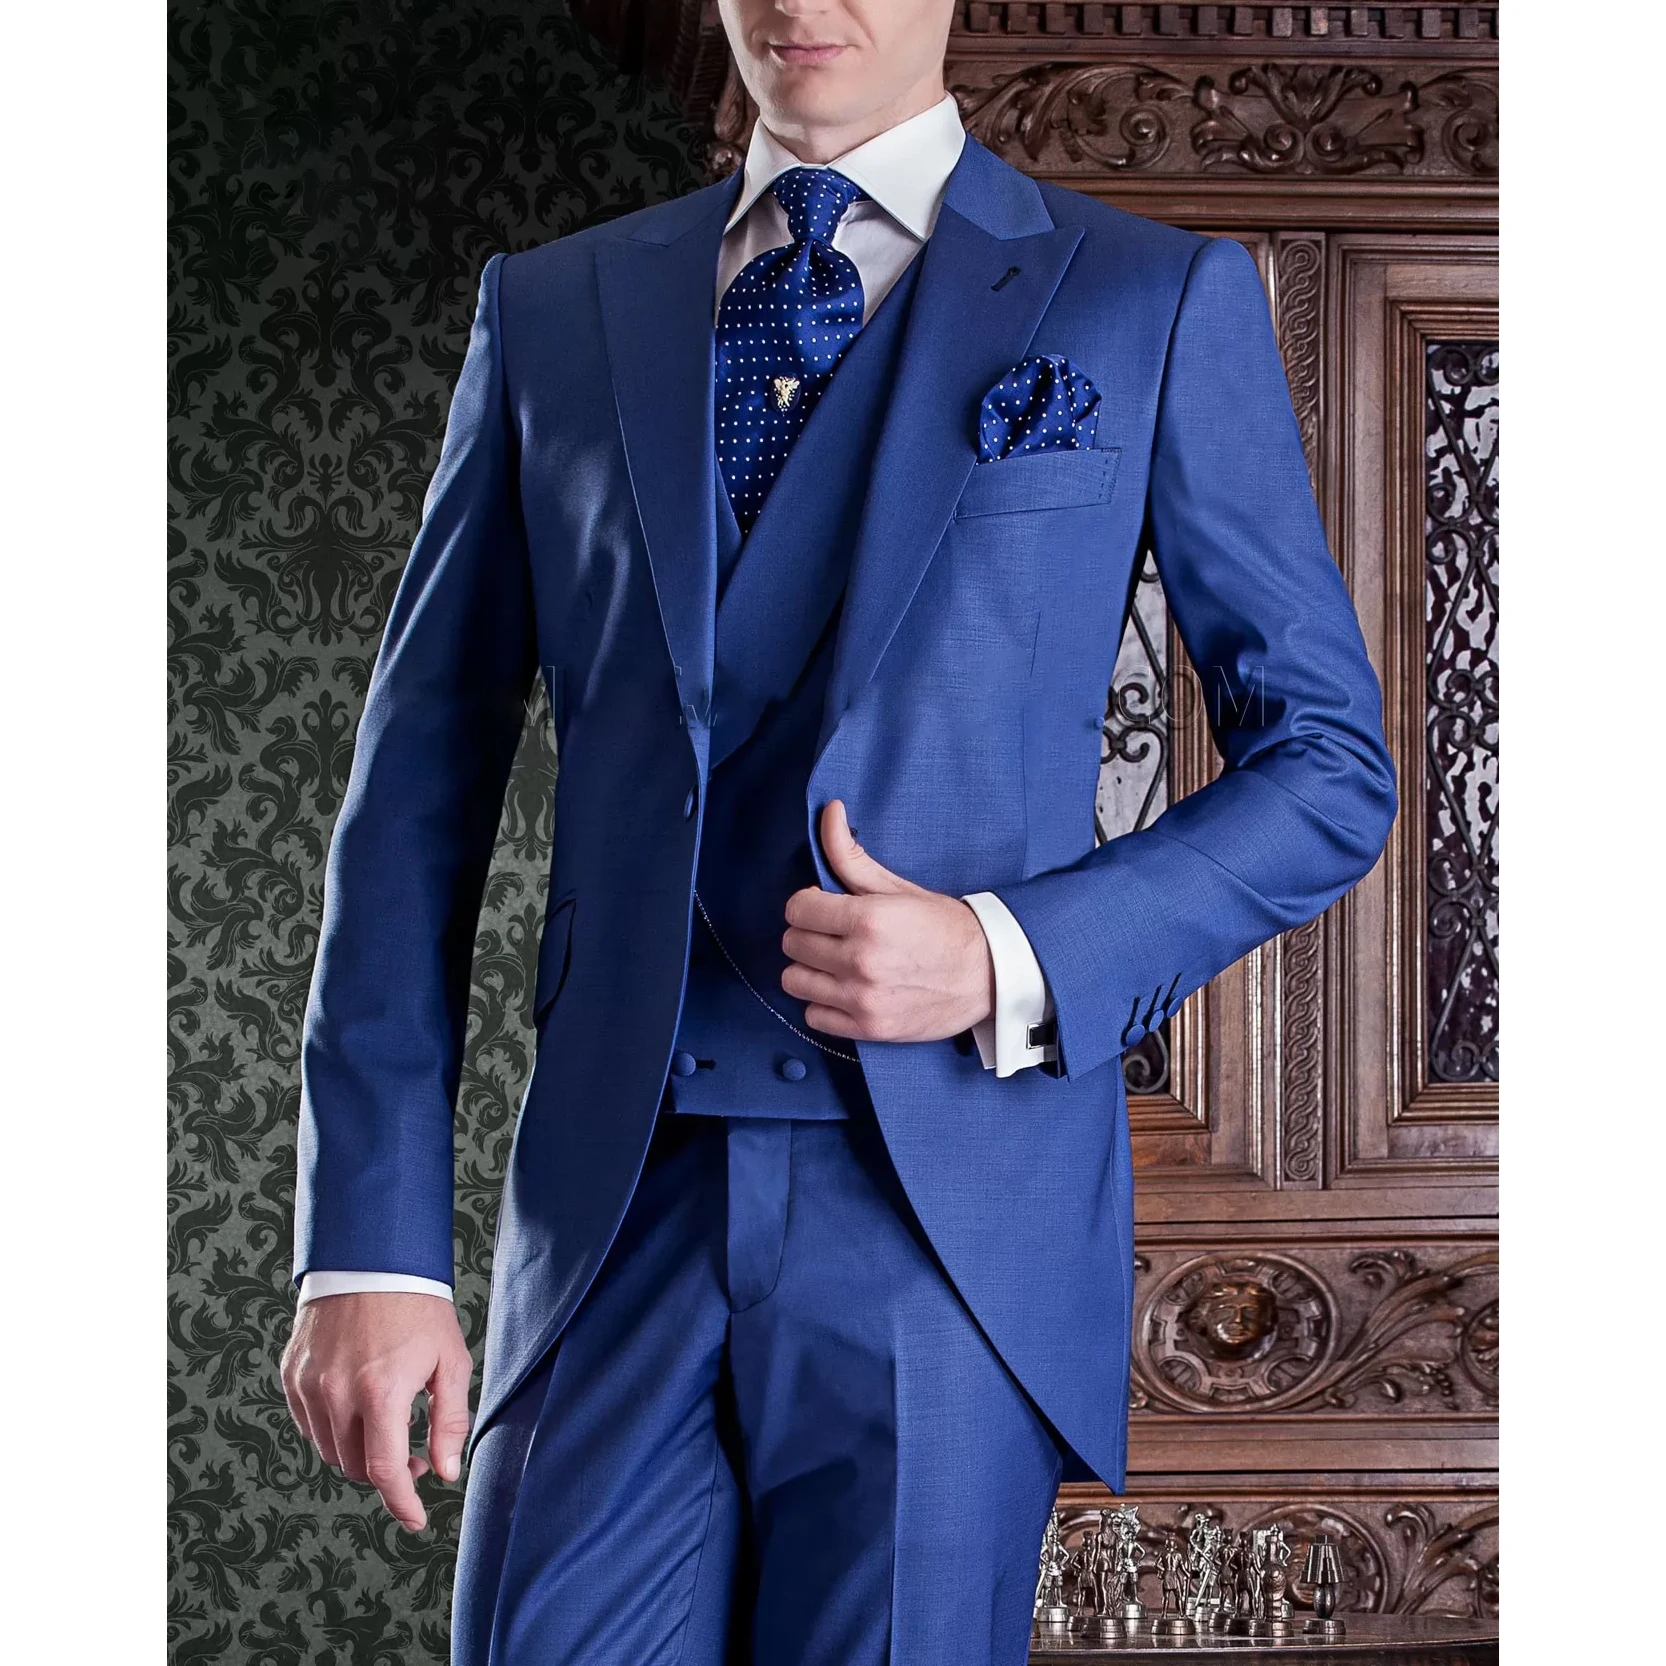 2023 כחול אופנה חליפות לגברים יוקרה אחת עם חזה מחורצים דש 3 יח ' קט מכנסיים וסט Slim Fit Terno Masculinos Completo